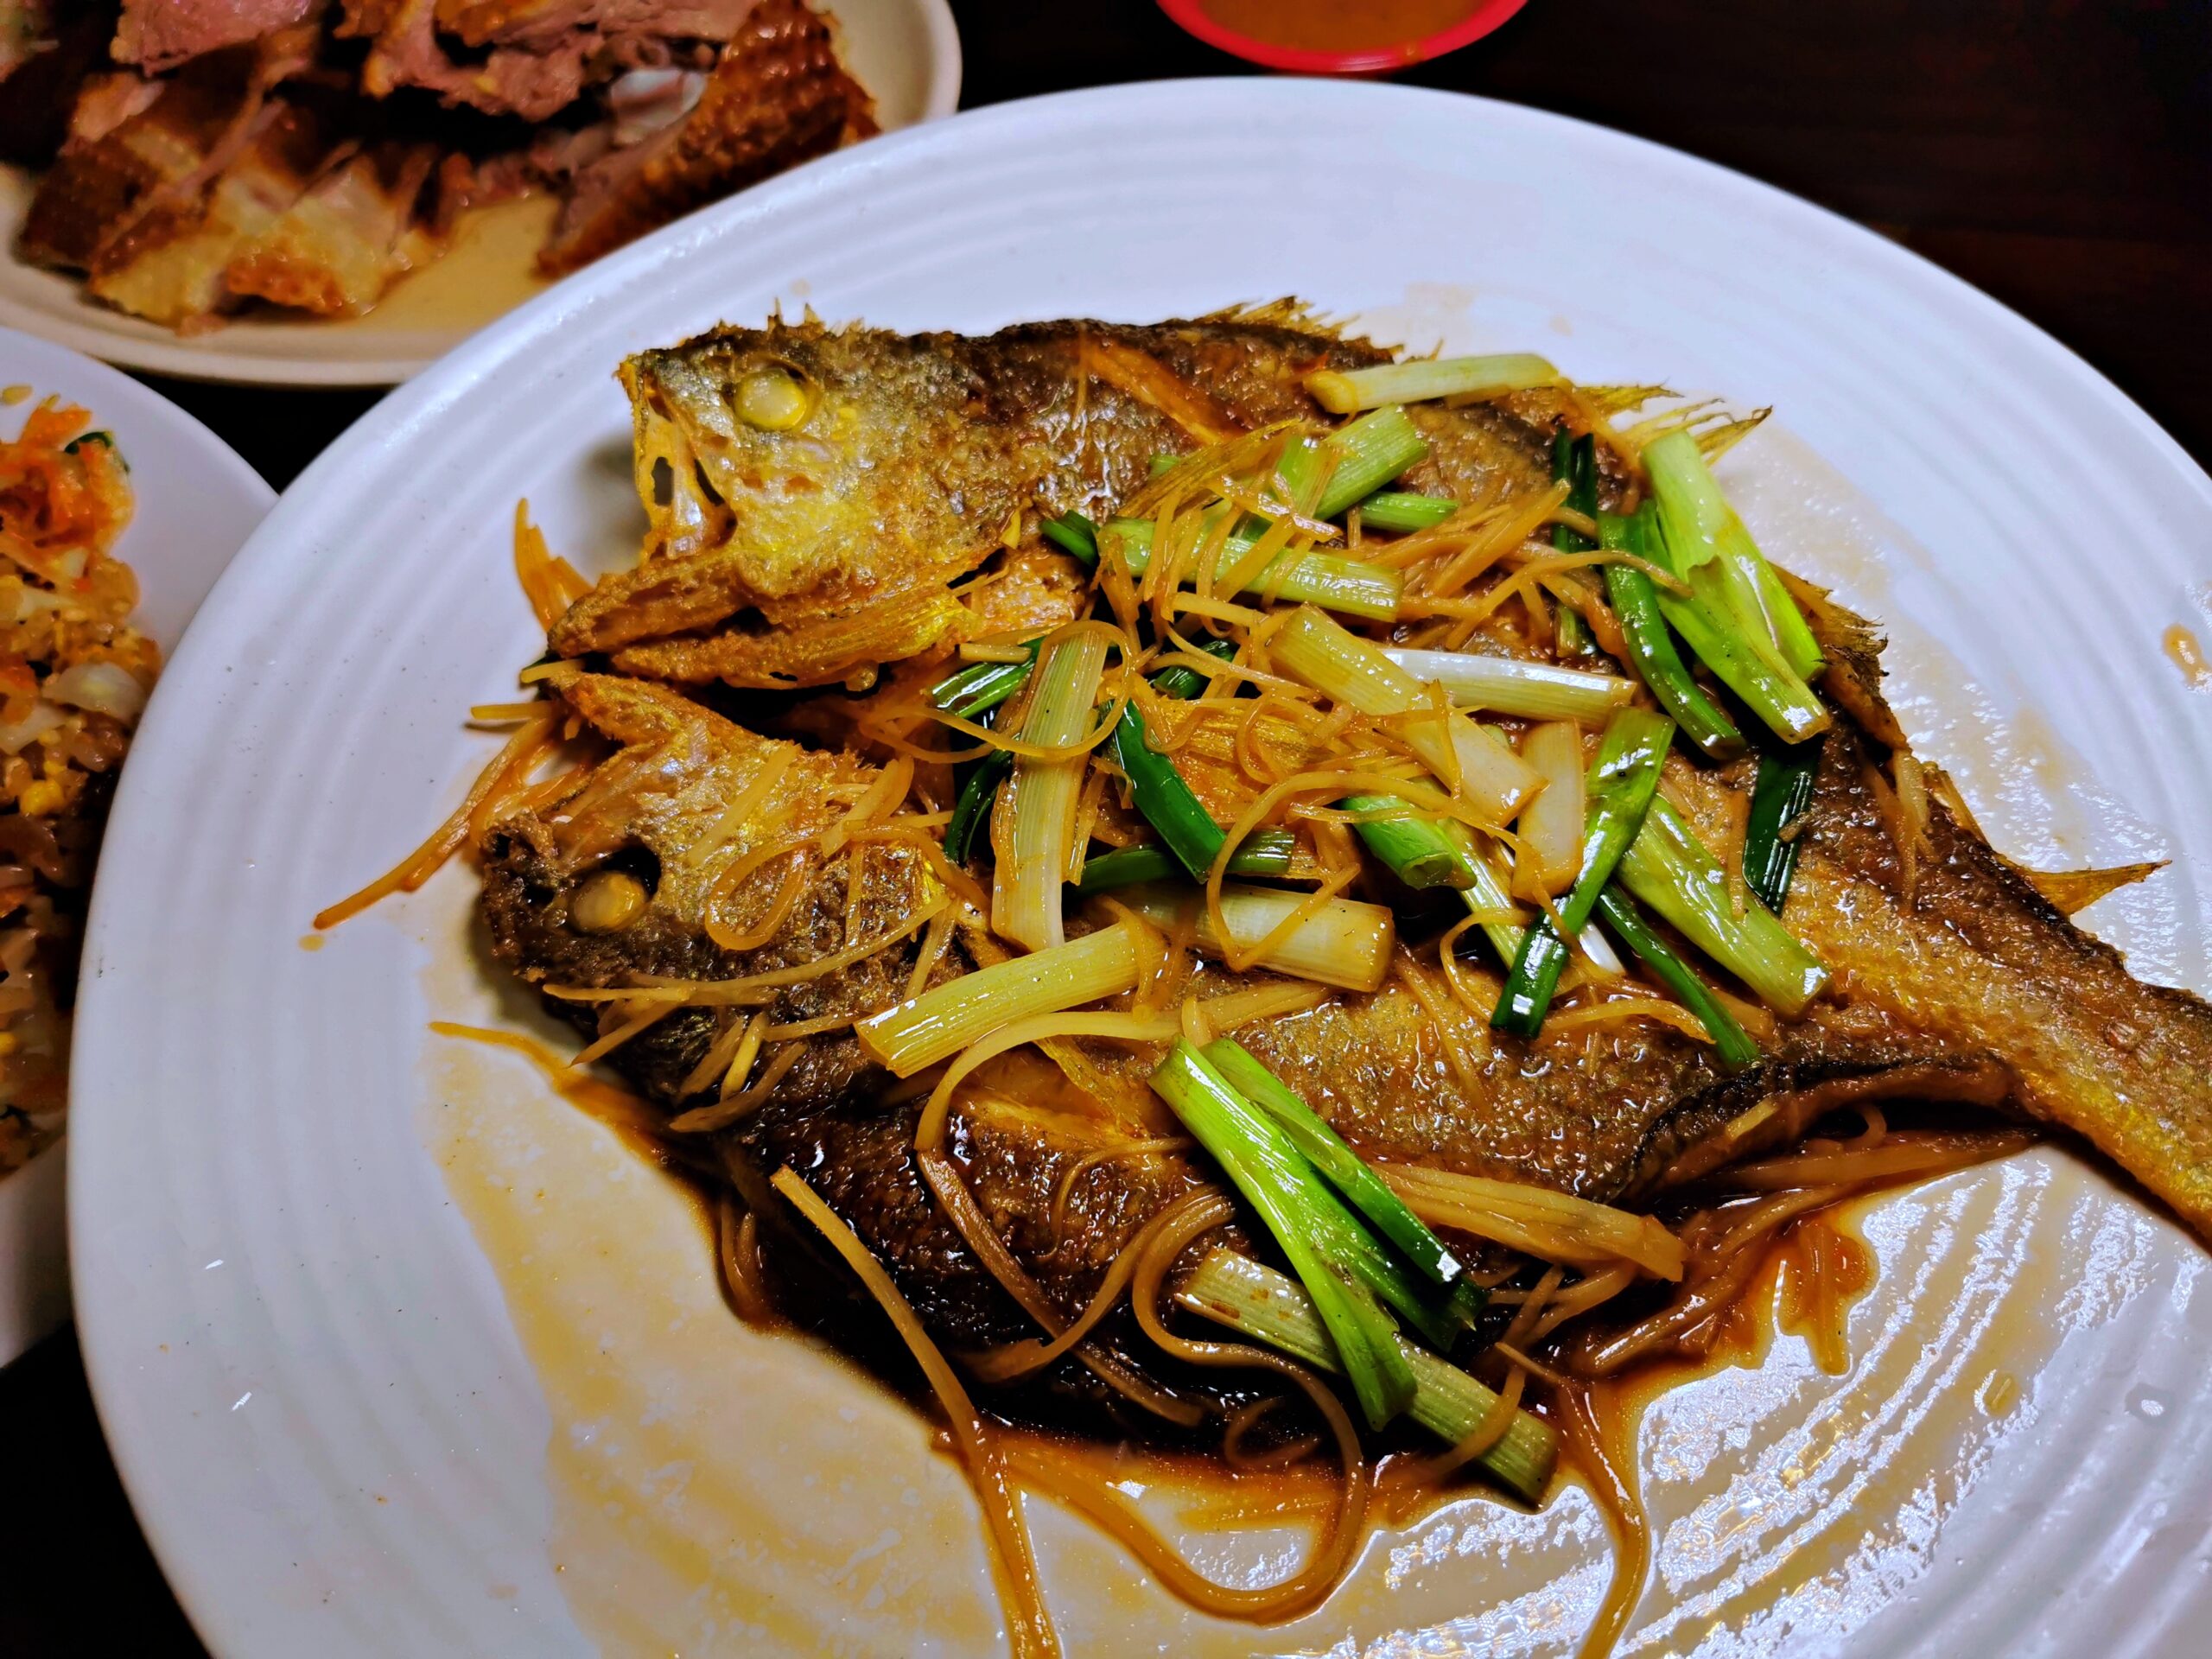 萬華美食：雲林鵝肉，大推煙燻鵝肉、鵝腸湯和金莎中卷-捷運龍山寺站